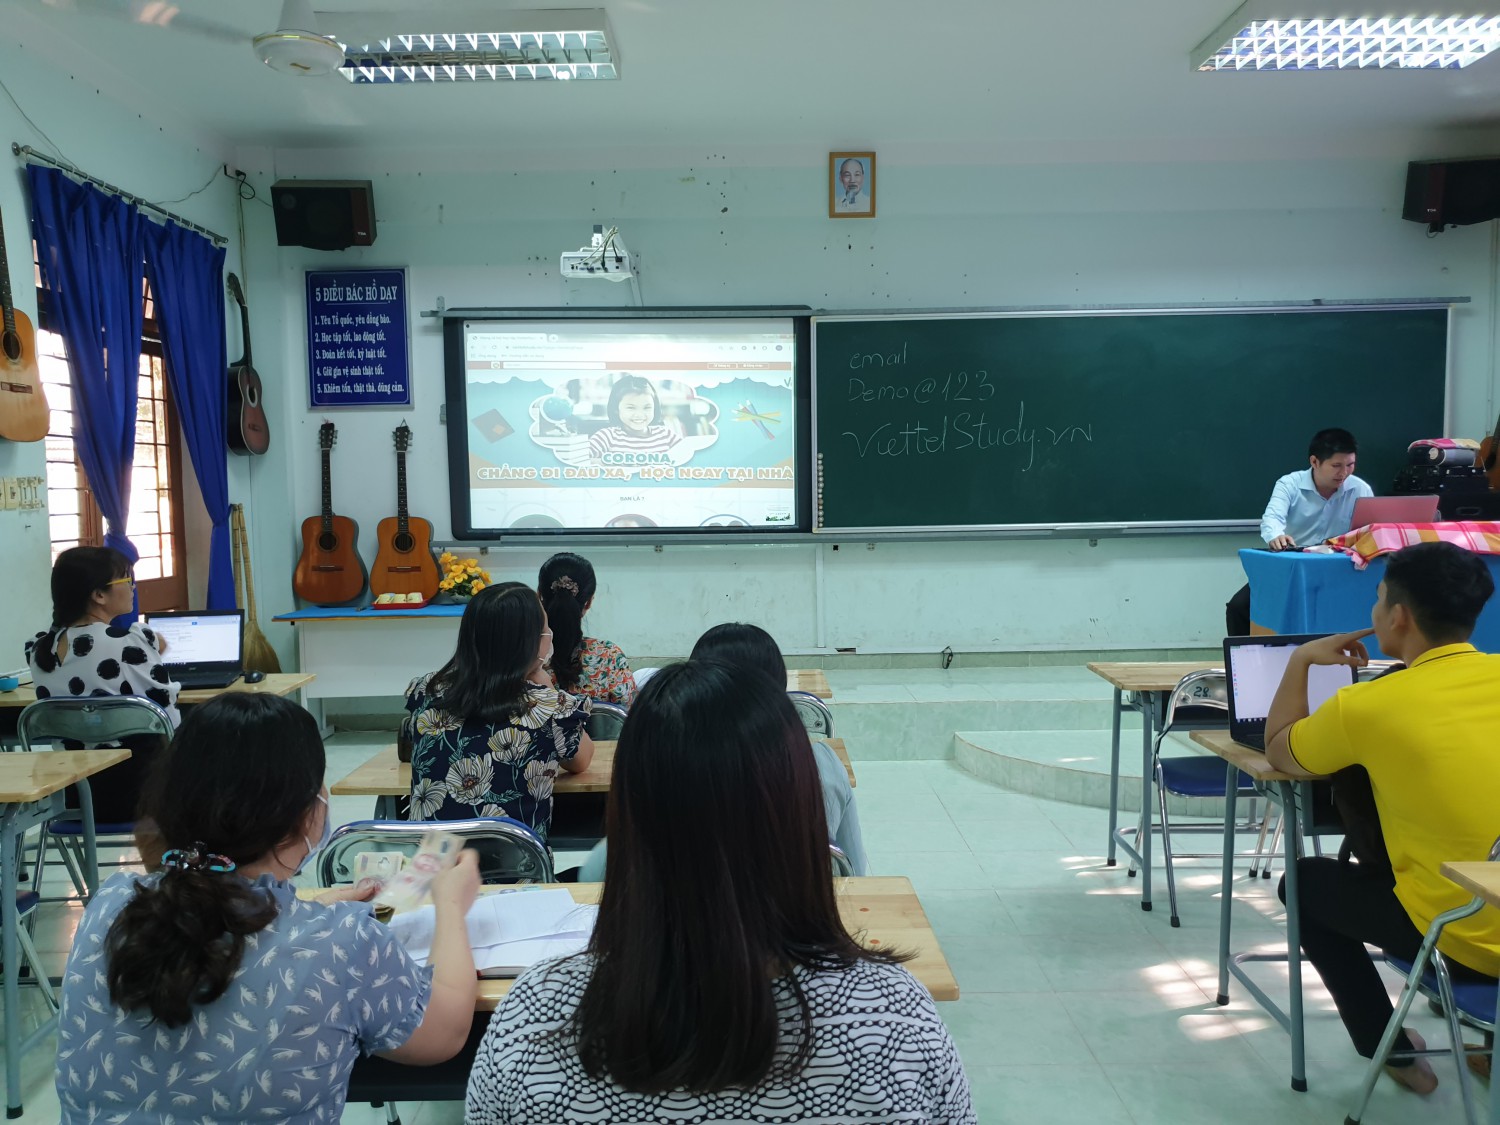 Trường THCS Nguyễn Văn Cừ tập huấn ứng dụng học trực tuyến qua phần mềm Viettelstudy